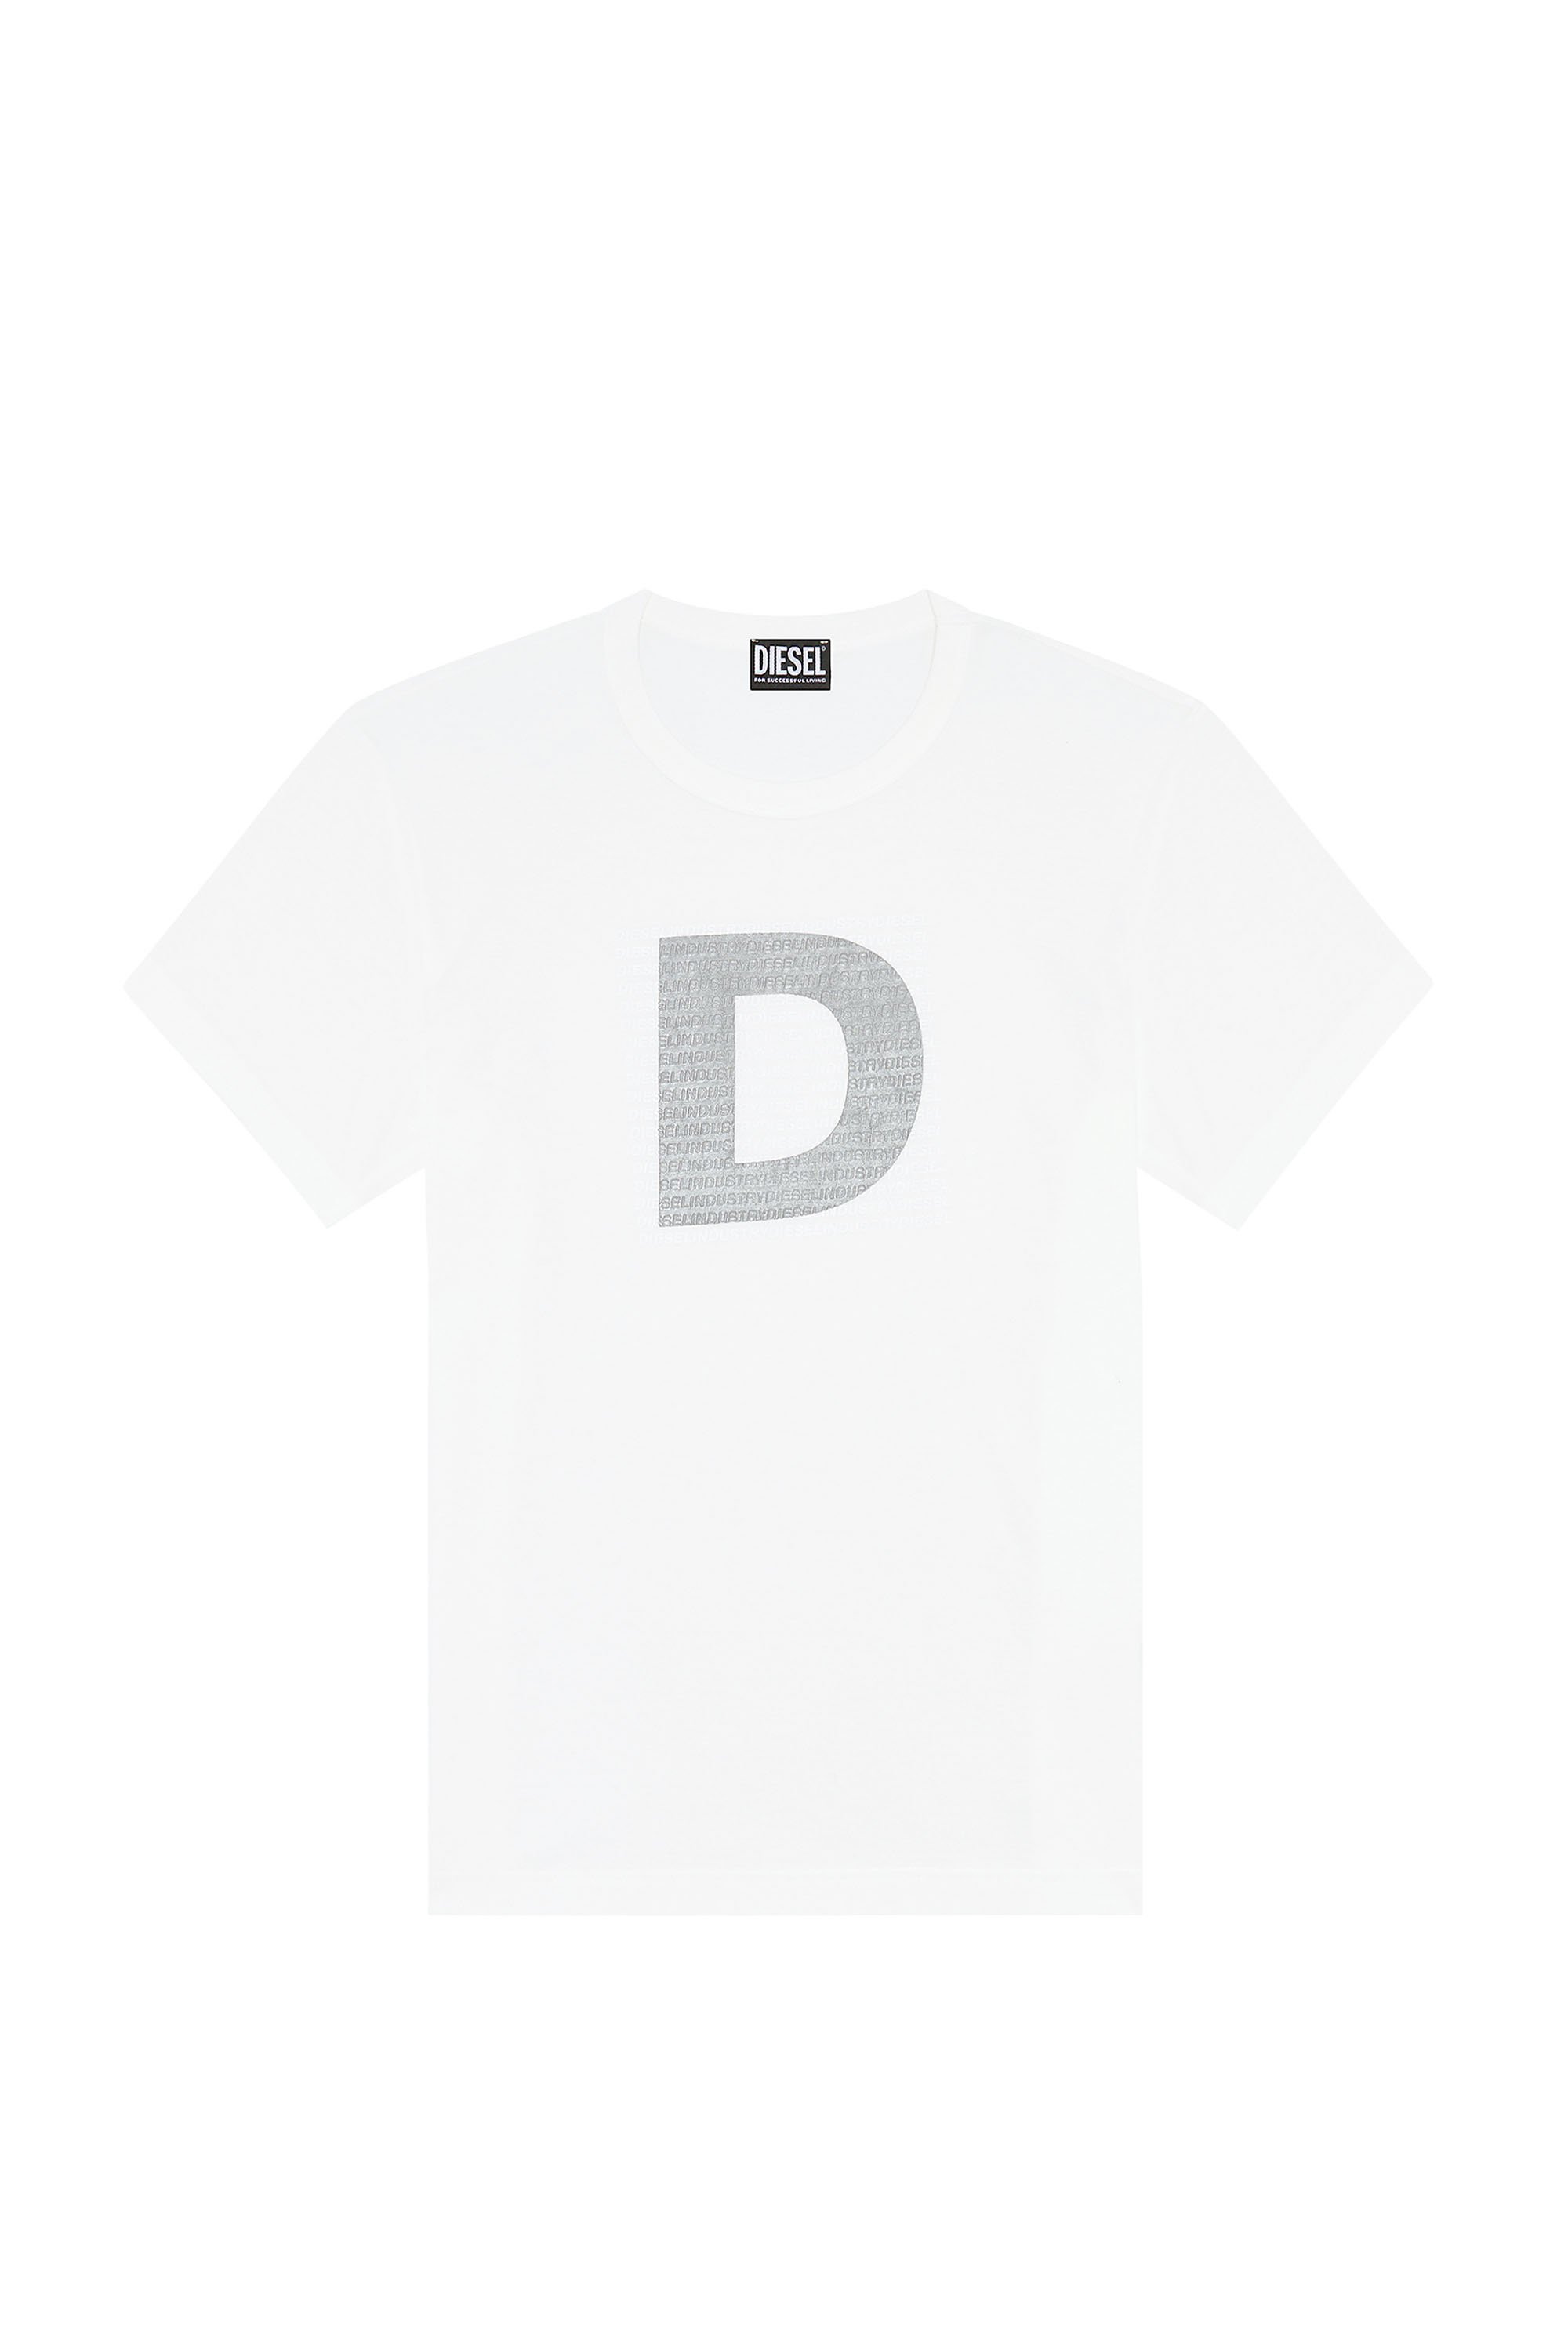 Diesel - T-DIEGOR-COL, White - Image 1